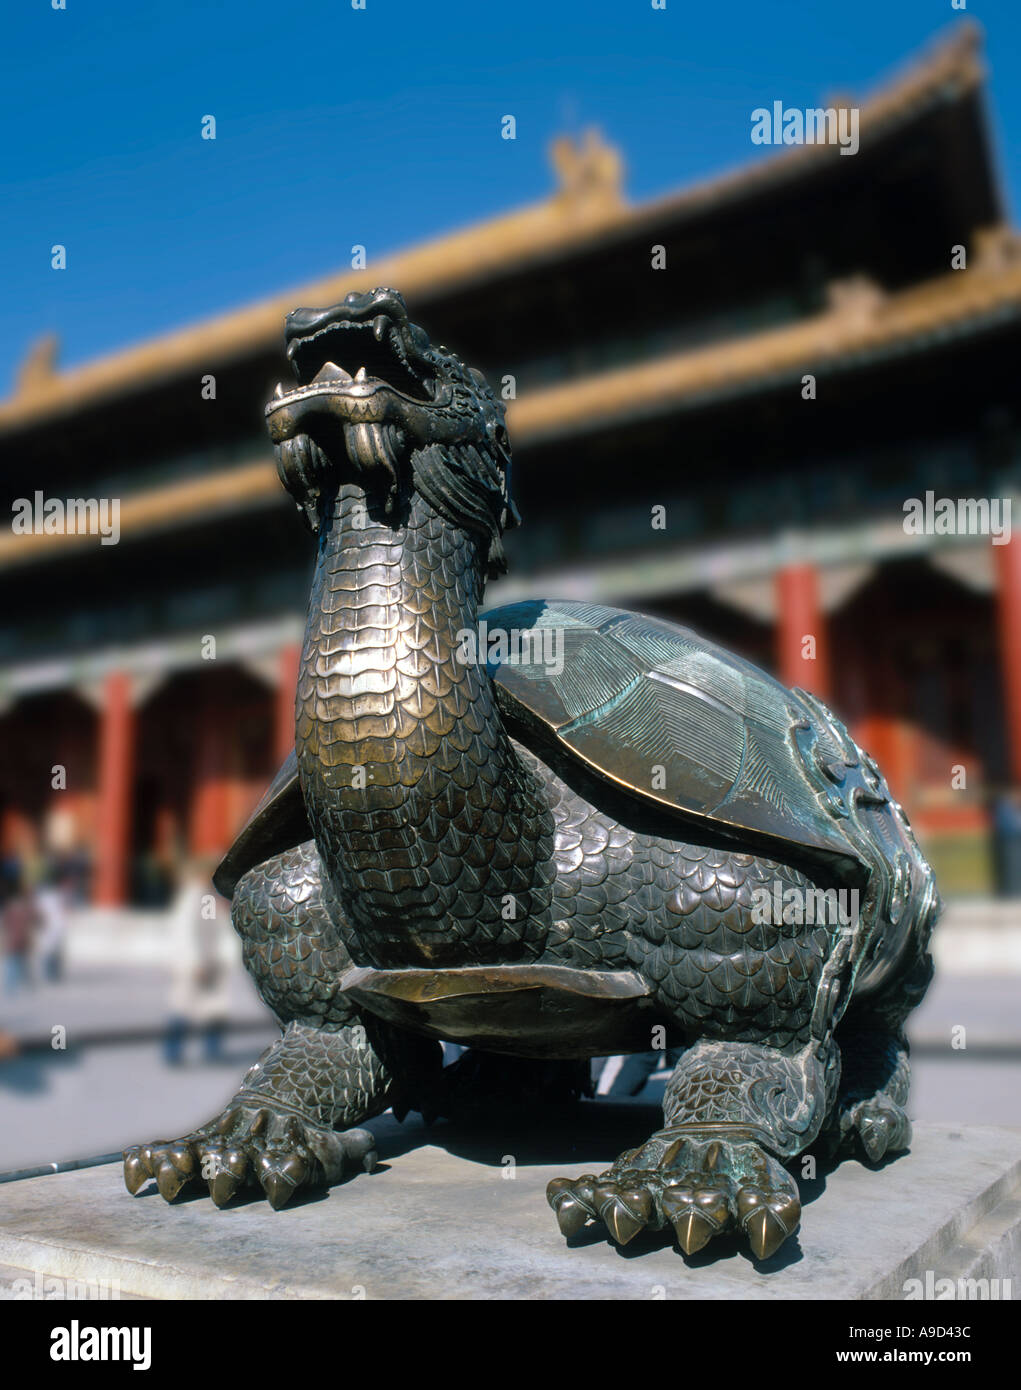 Estatua de bronce de una tortuga con cabeza de dragón en frente del Tai él Dian Hall, el Palacio Imperial, la Ciudad Prohibida, Beijing, China Foto de stock